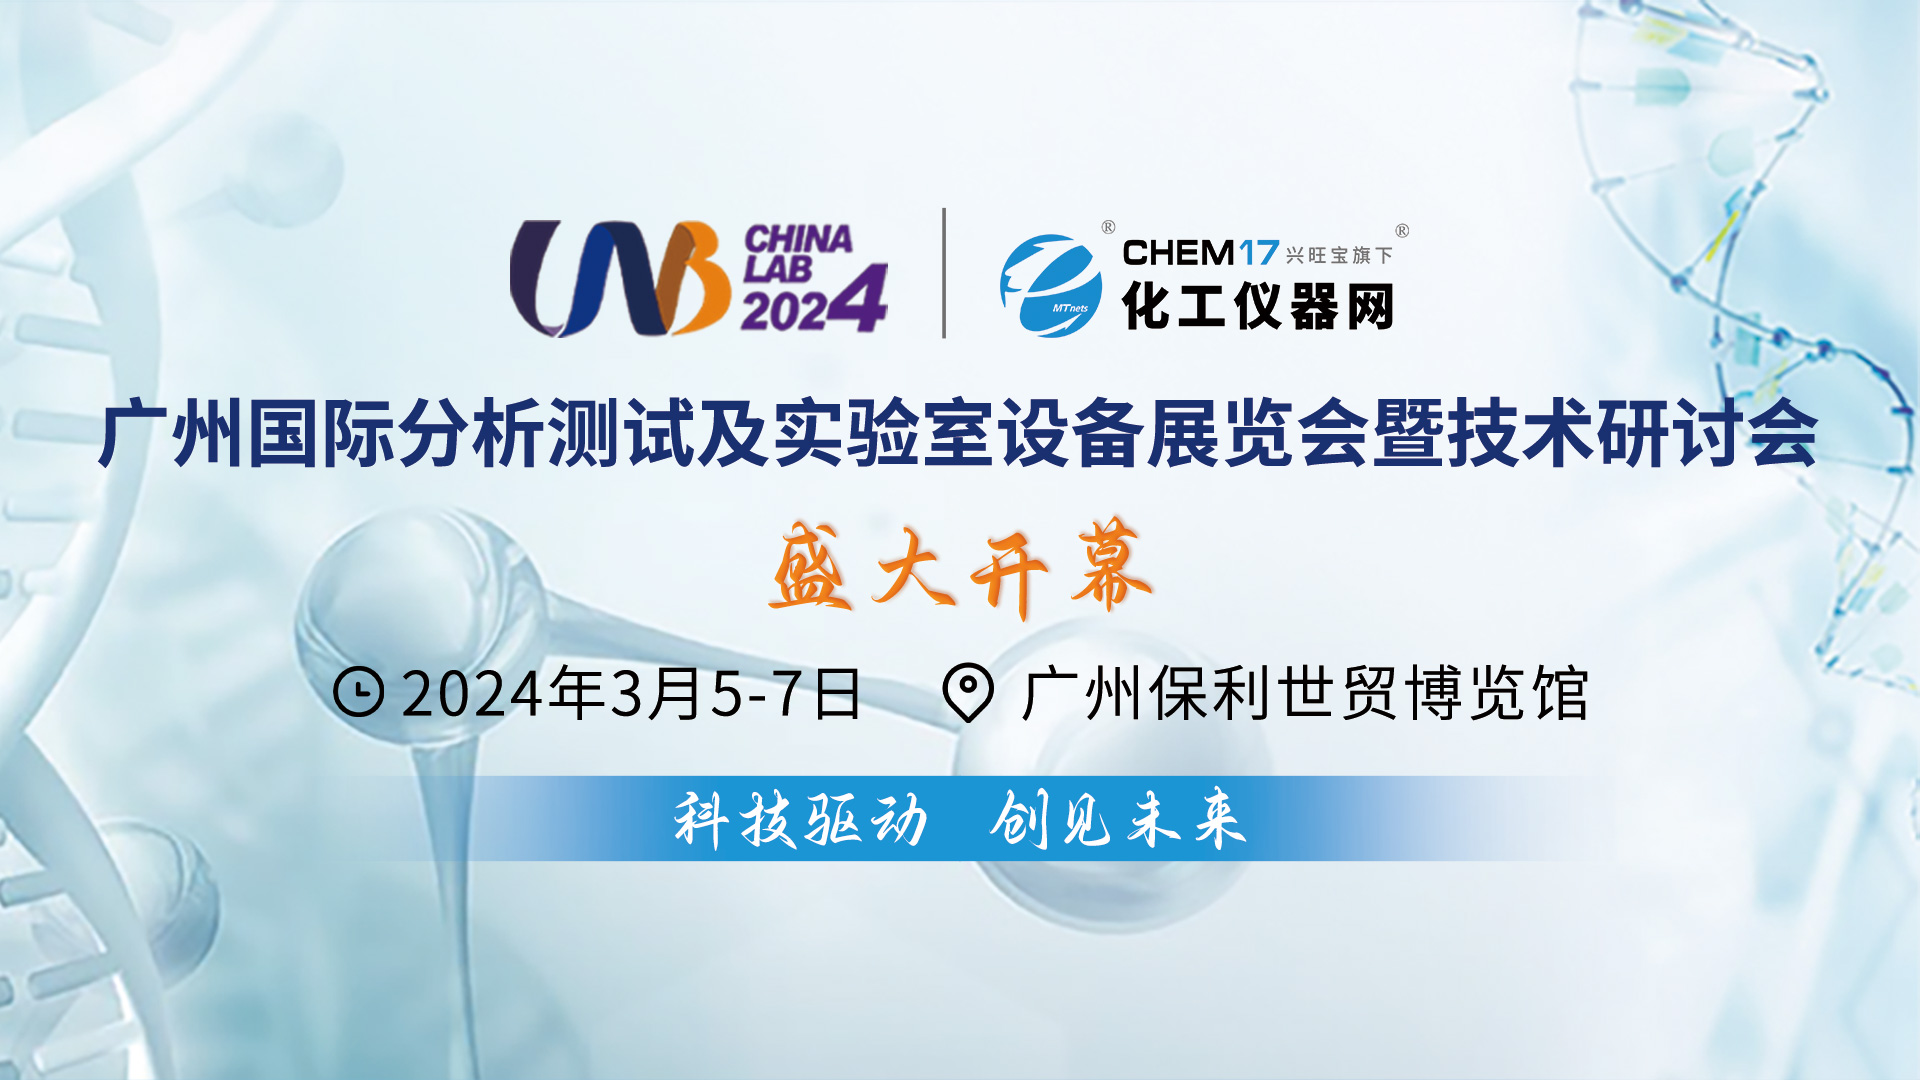 仪器行业盛会！CHINA LAB 2024展会在广州盛大开幕！